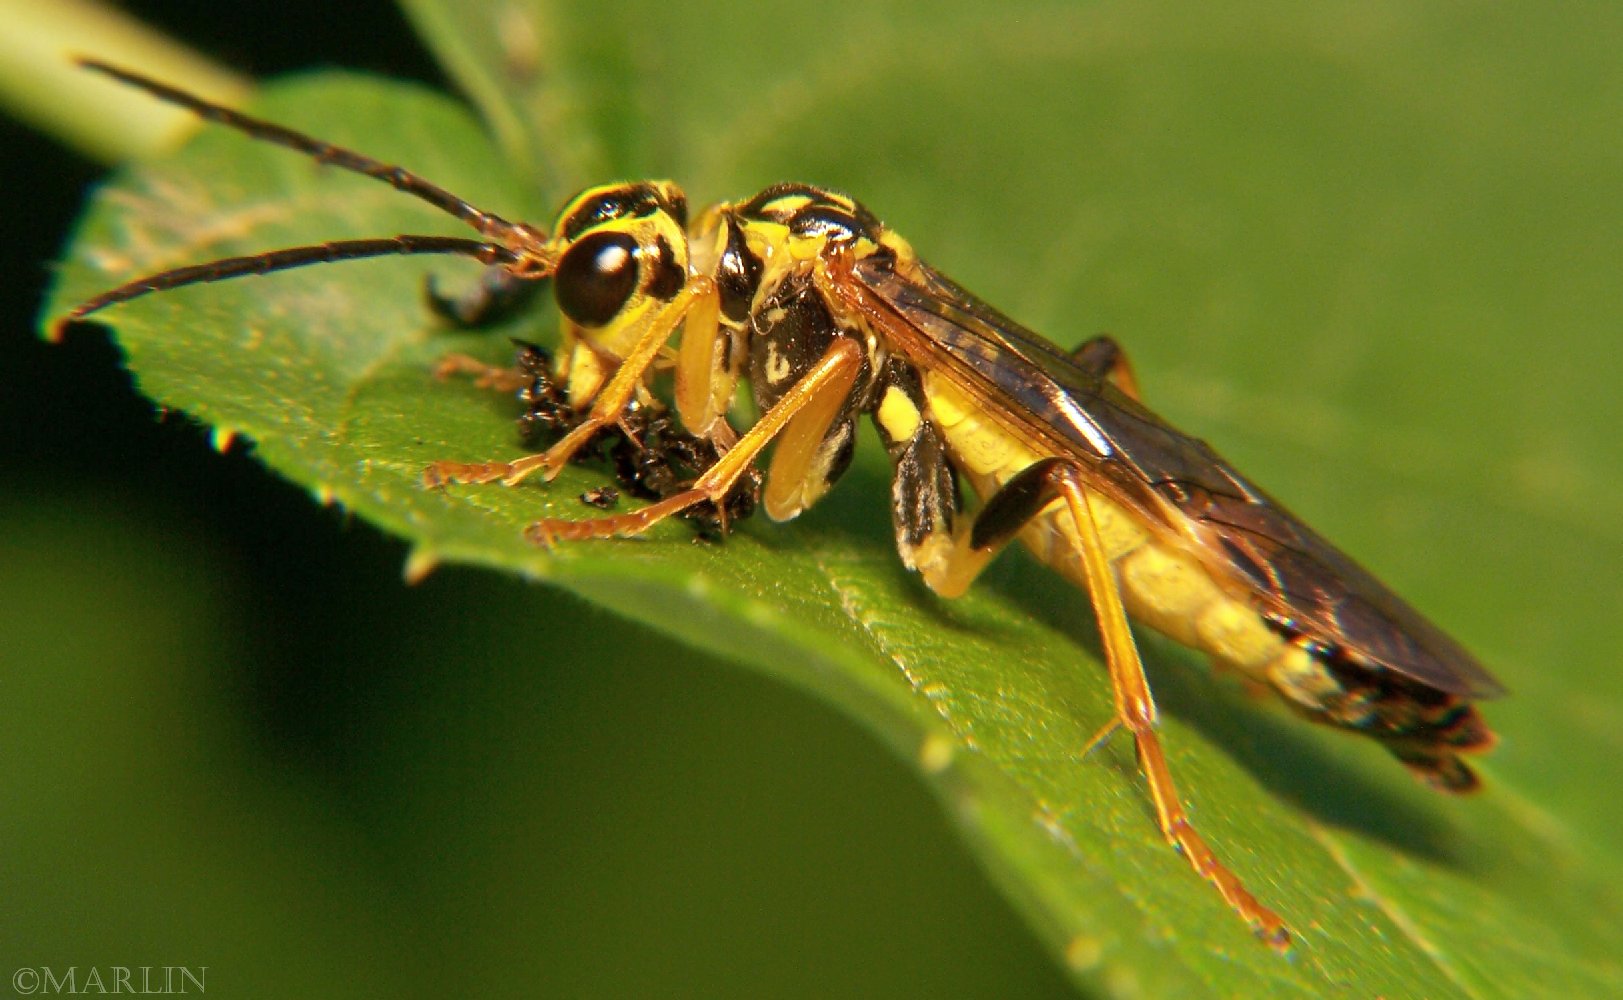 yellow sawfly eats beetle prey